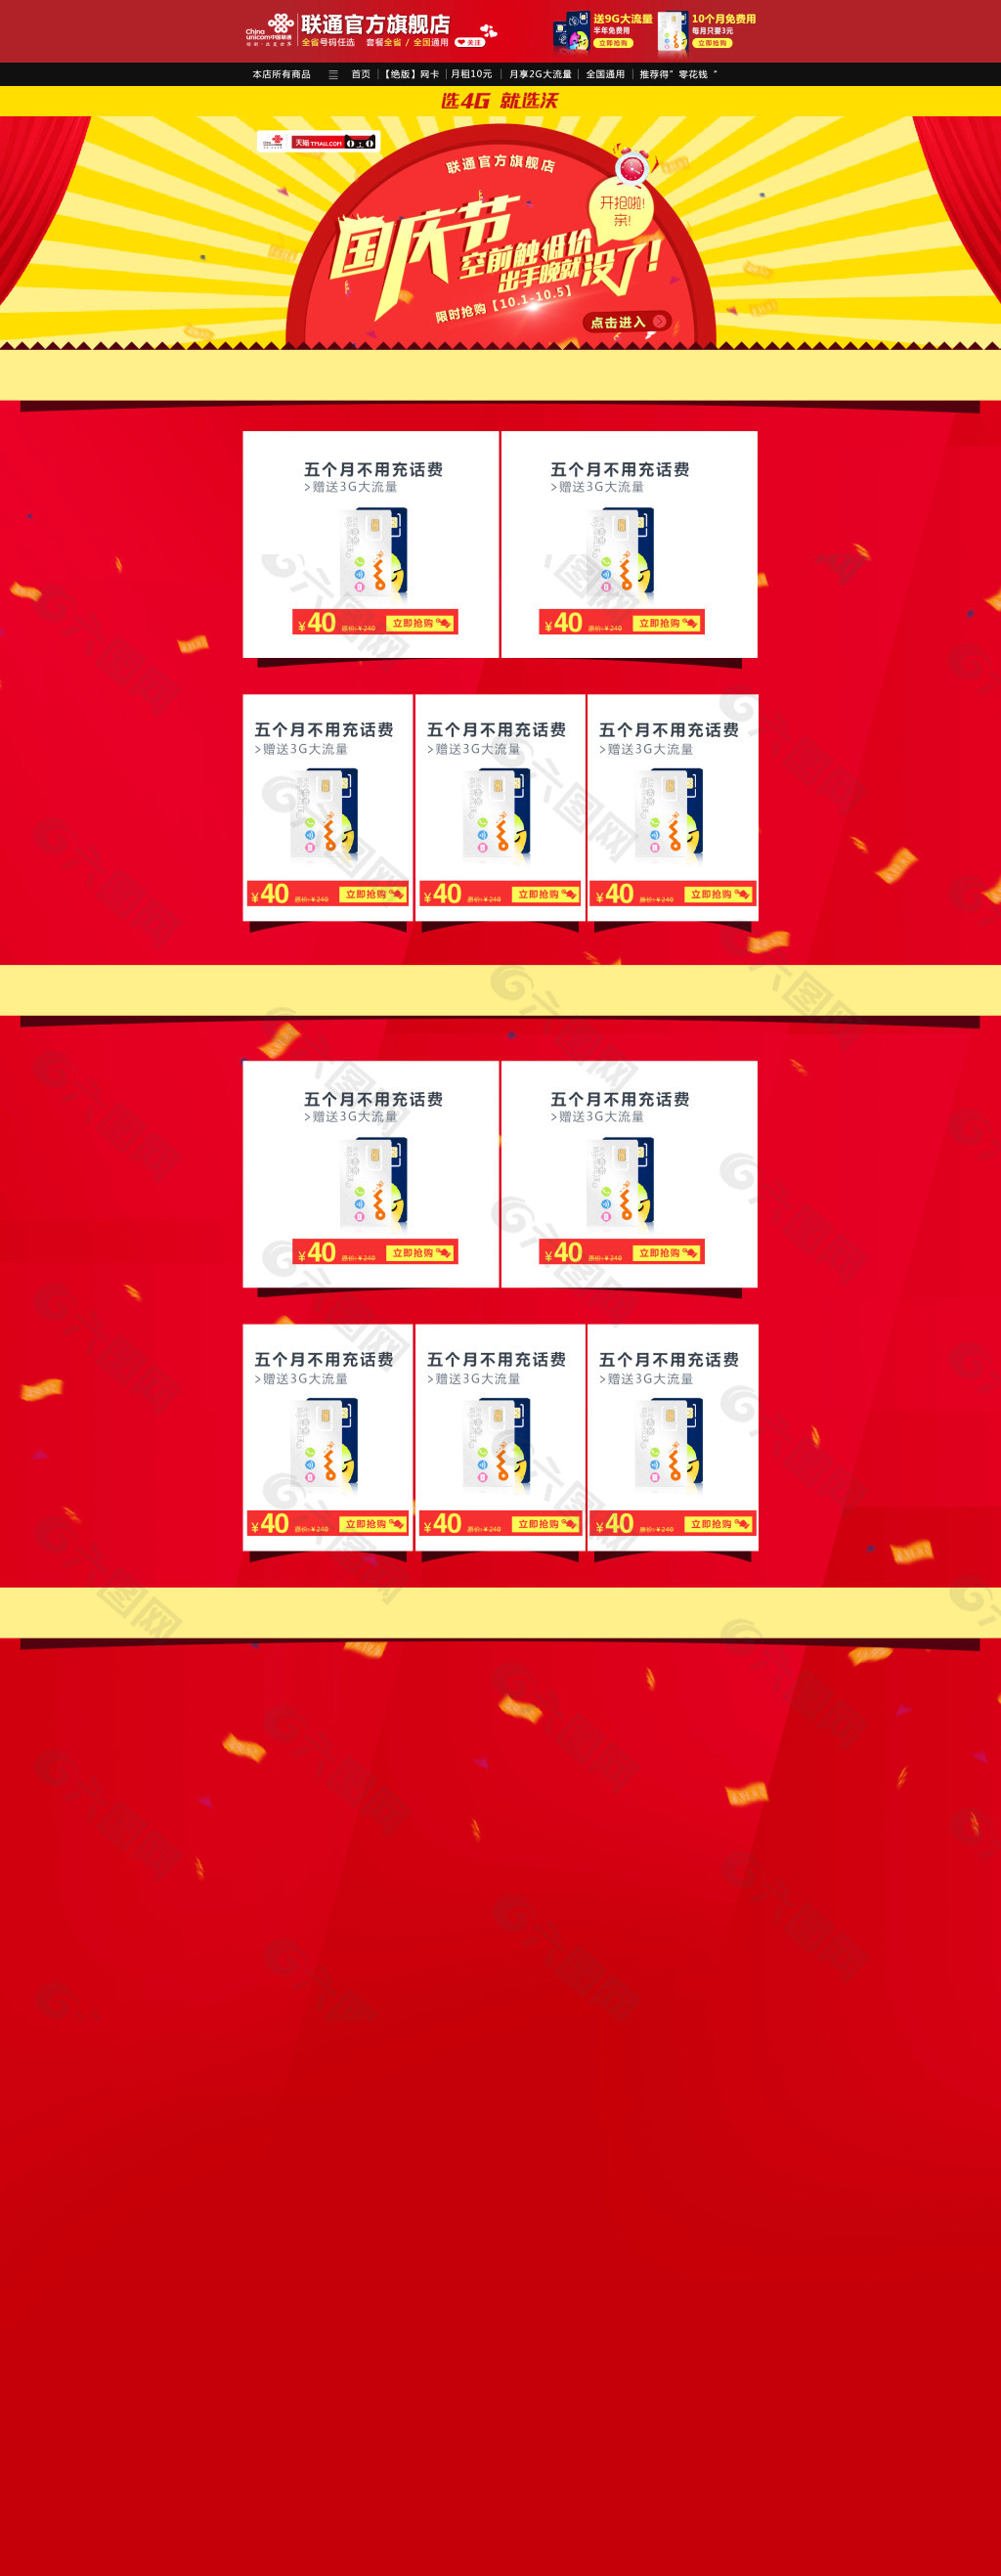 国庆节 天猫主页 网页设计